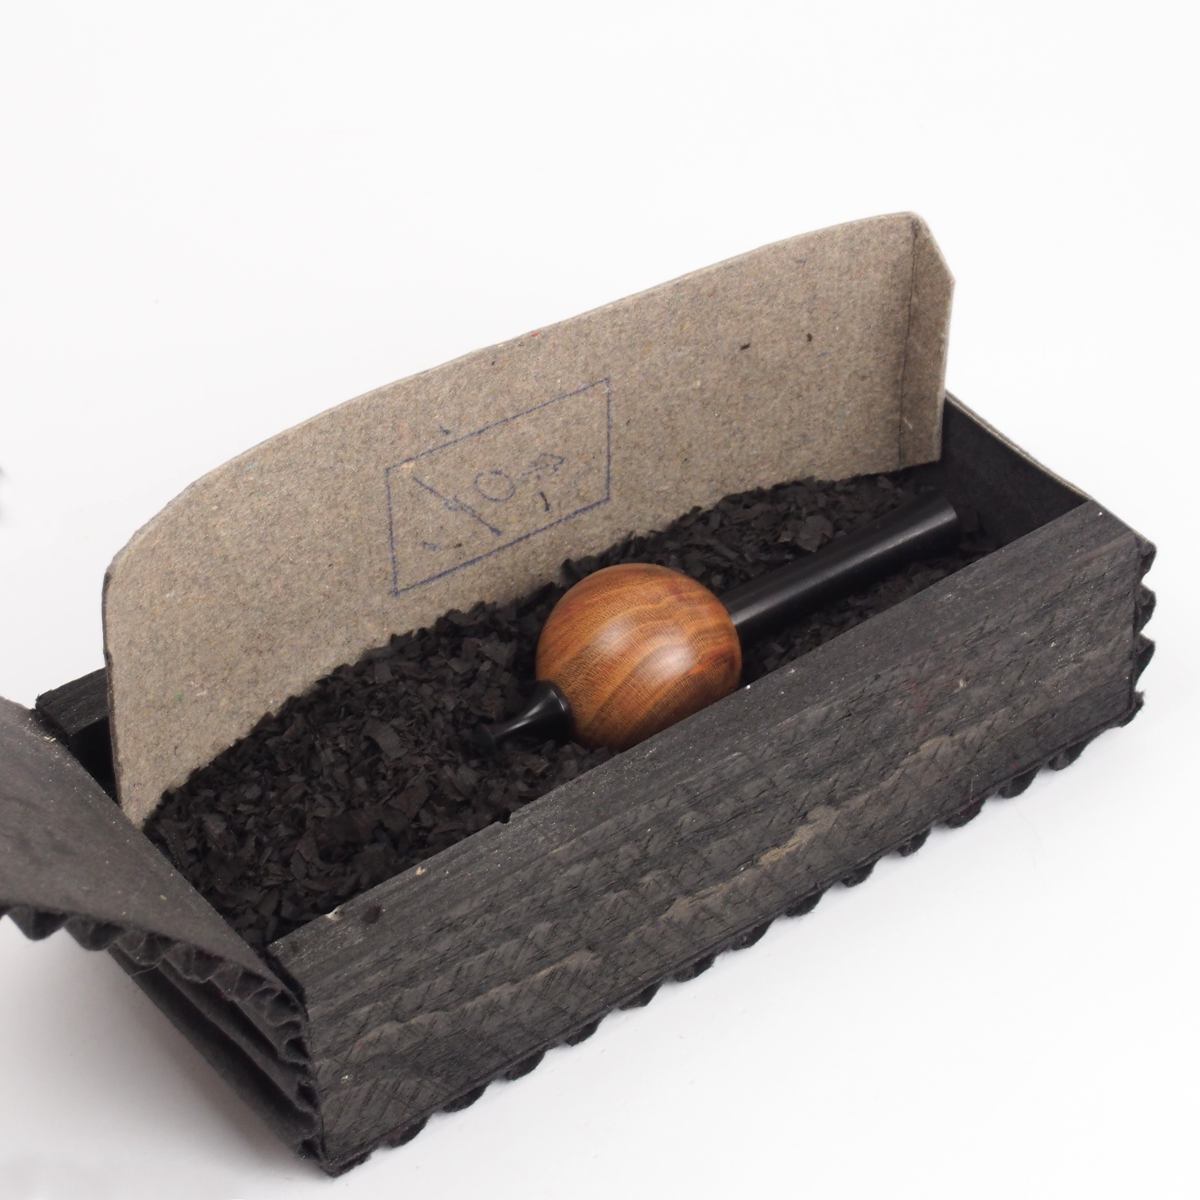 Der Holzkreisel kommt in einer von Christoff Guttermann gefertigten Geschenkverpackung aus Holz und Wellpappe